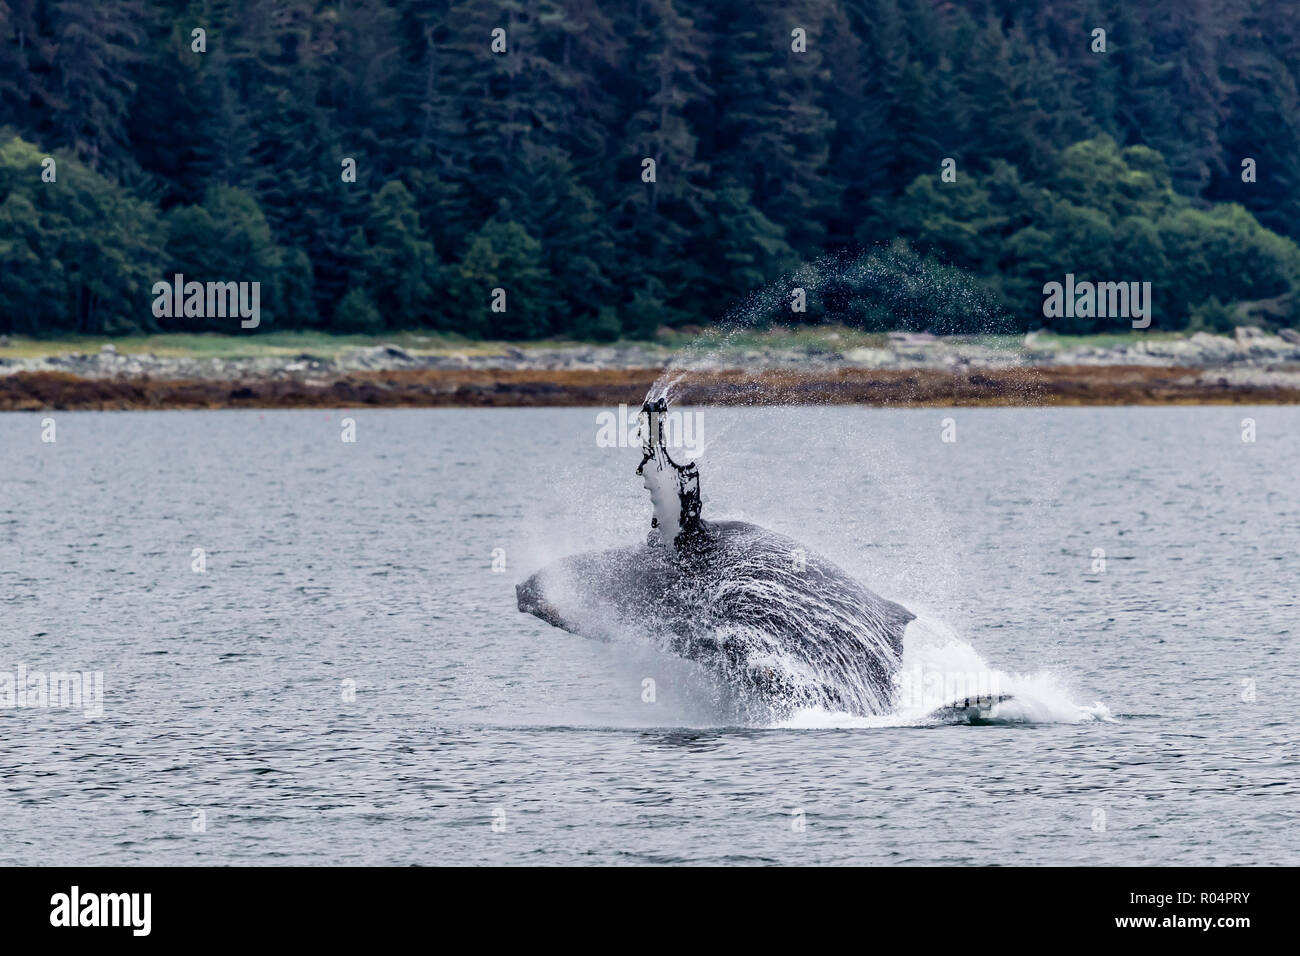 Baleine à bosse (Megaptera novaeangliae) violer près de la péninsule de verre, le sud-est de l'Alaska, États-Unis d'Amérique, Amérique du Nord Banque D'Images